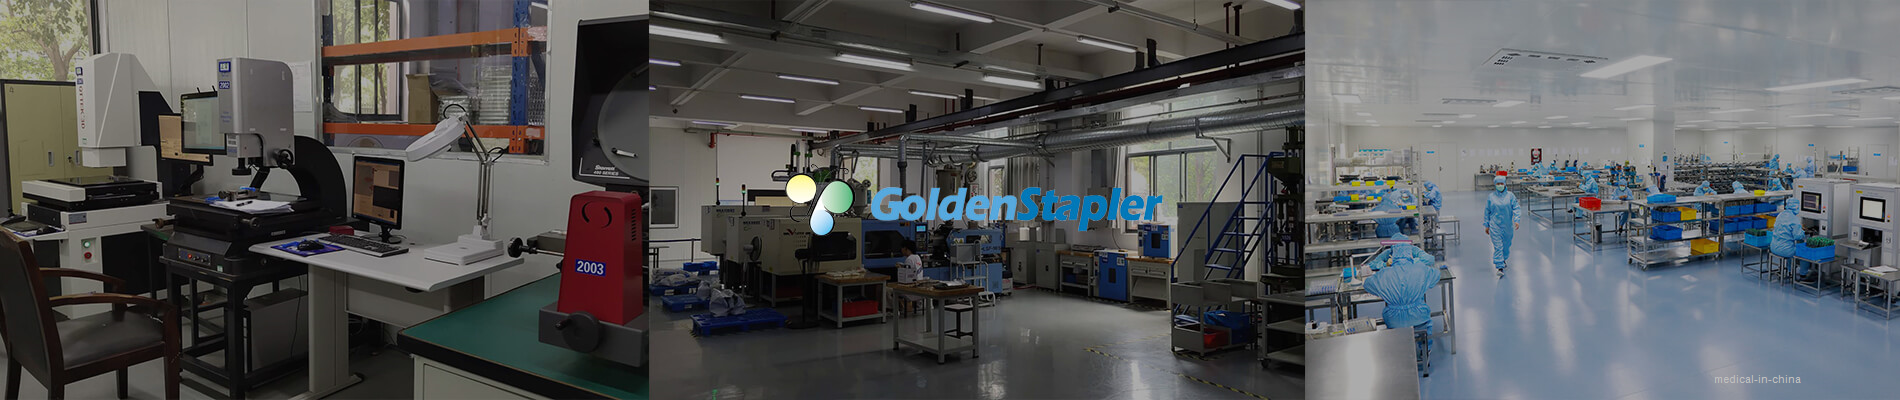 Golden Stapler Surgical Co.,Ltd.